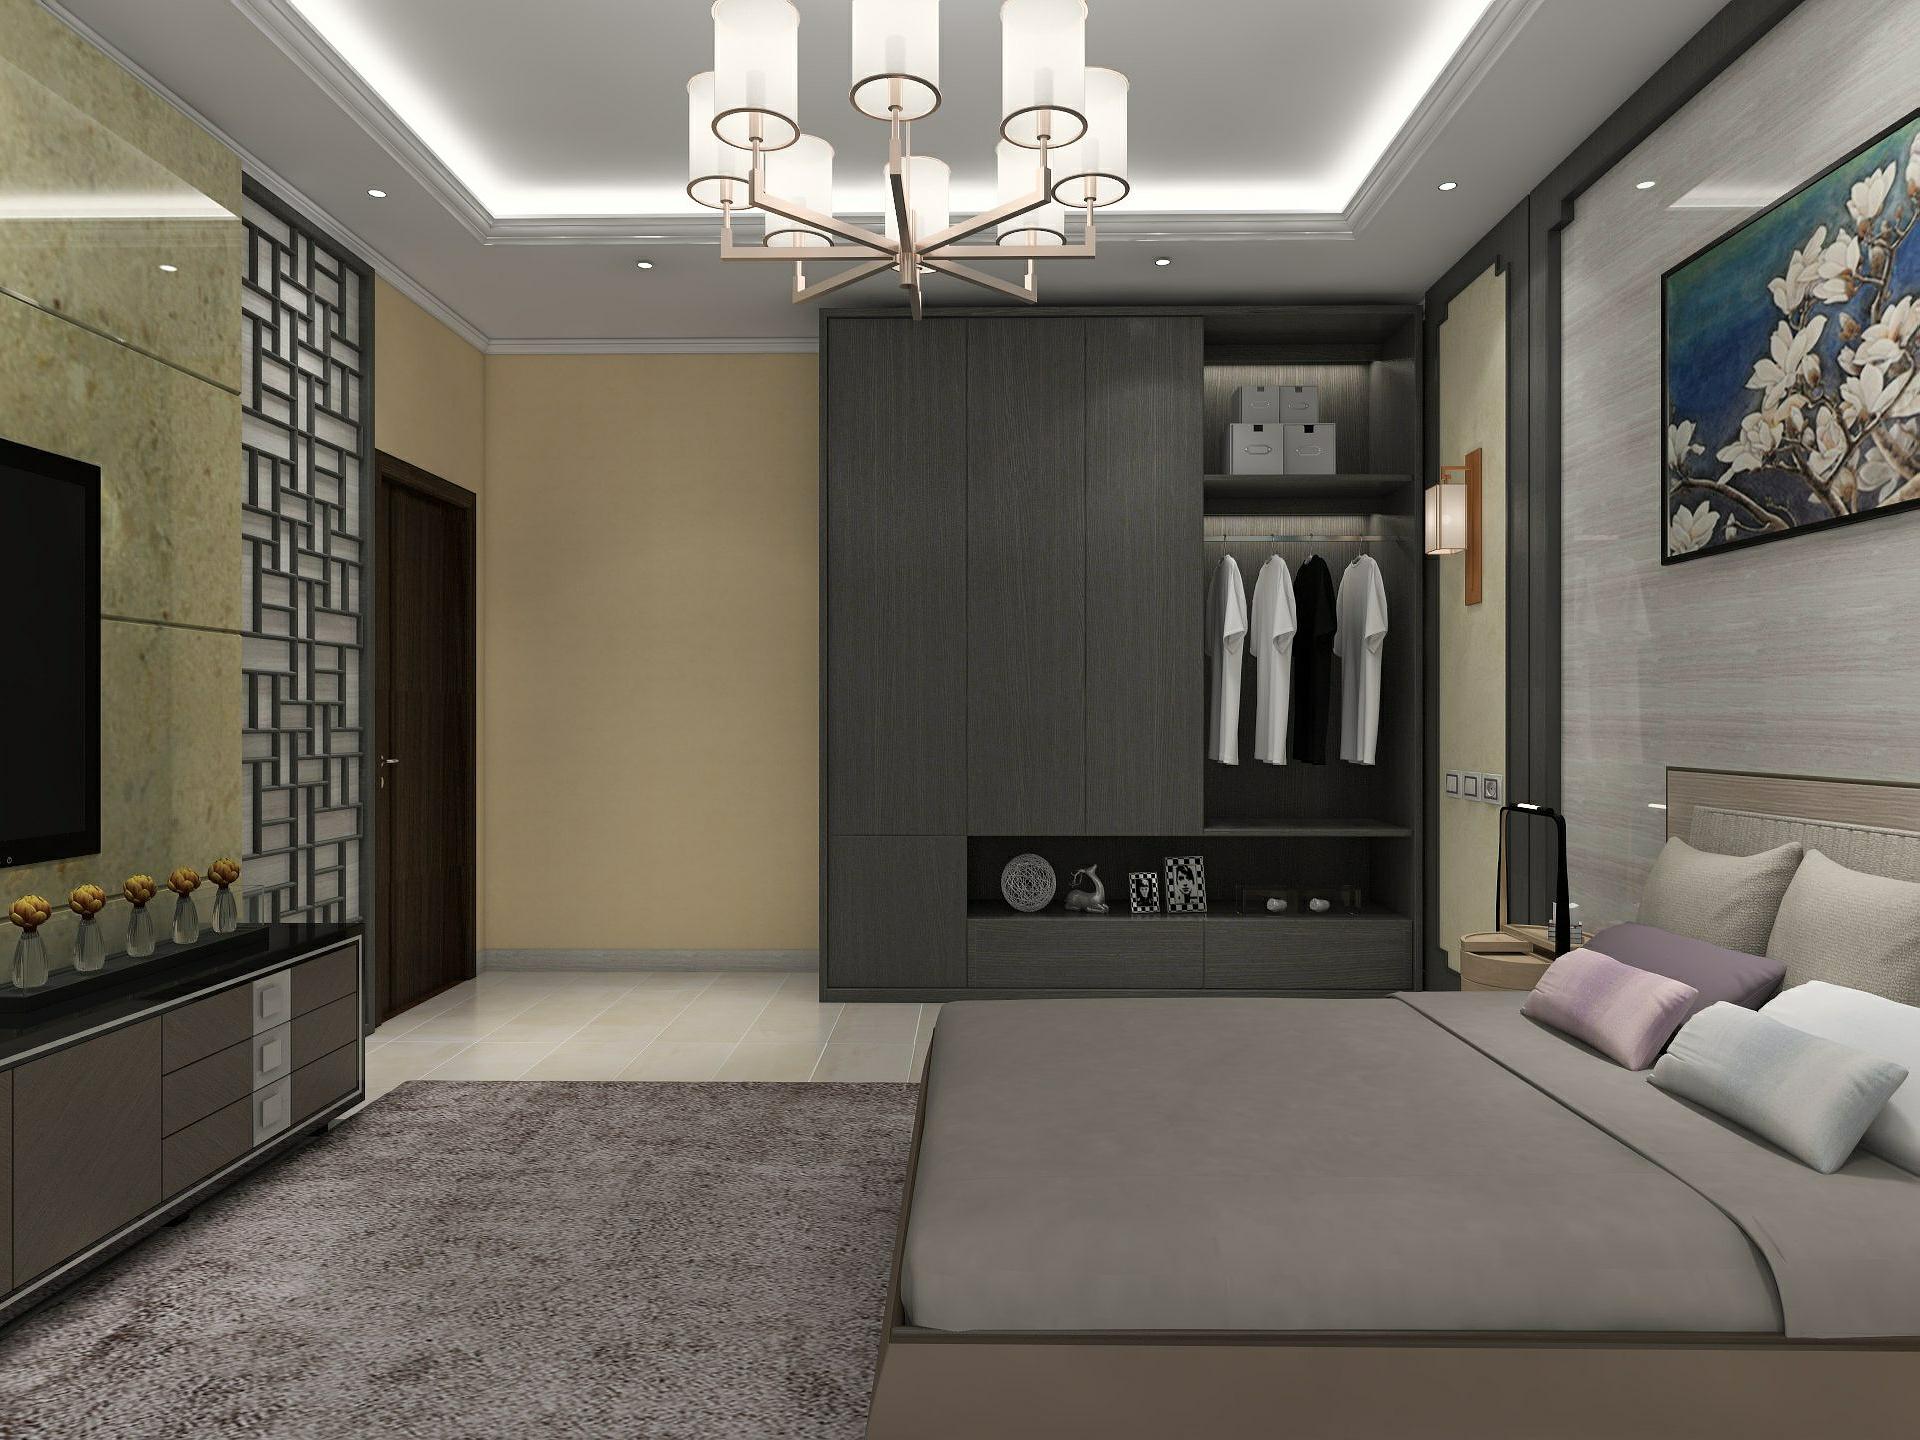 现代中式风格卧室